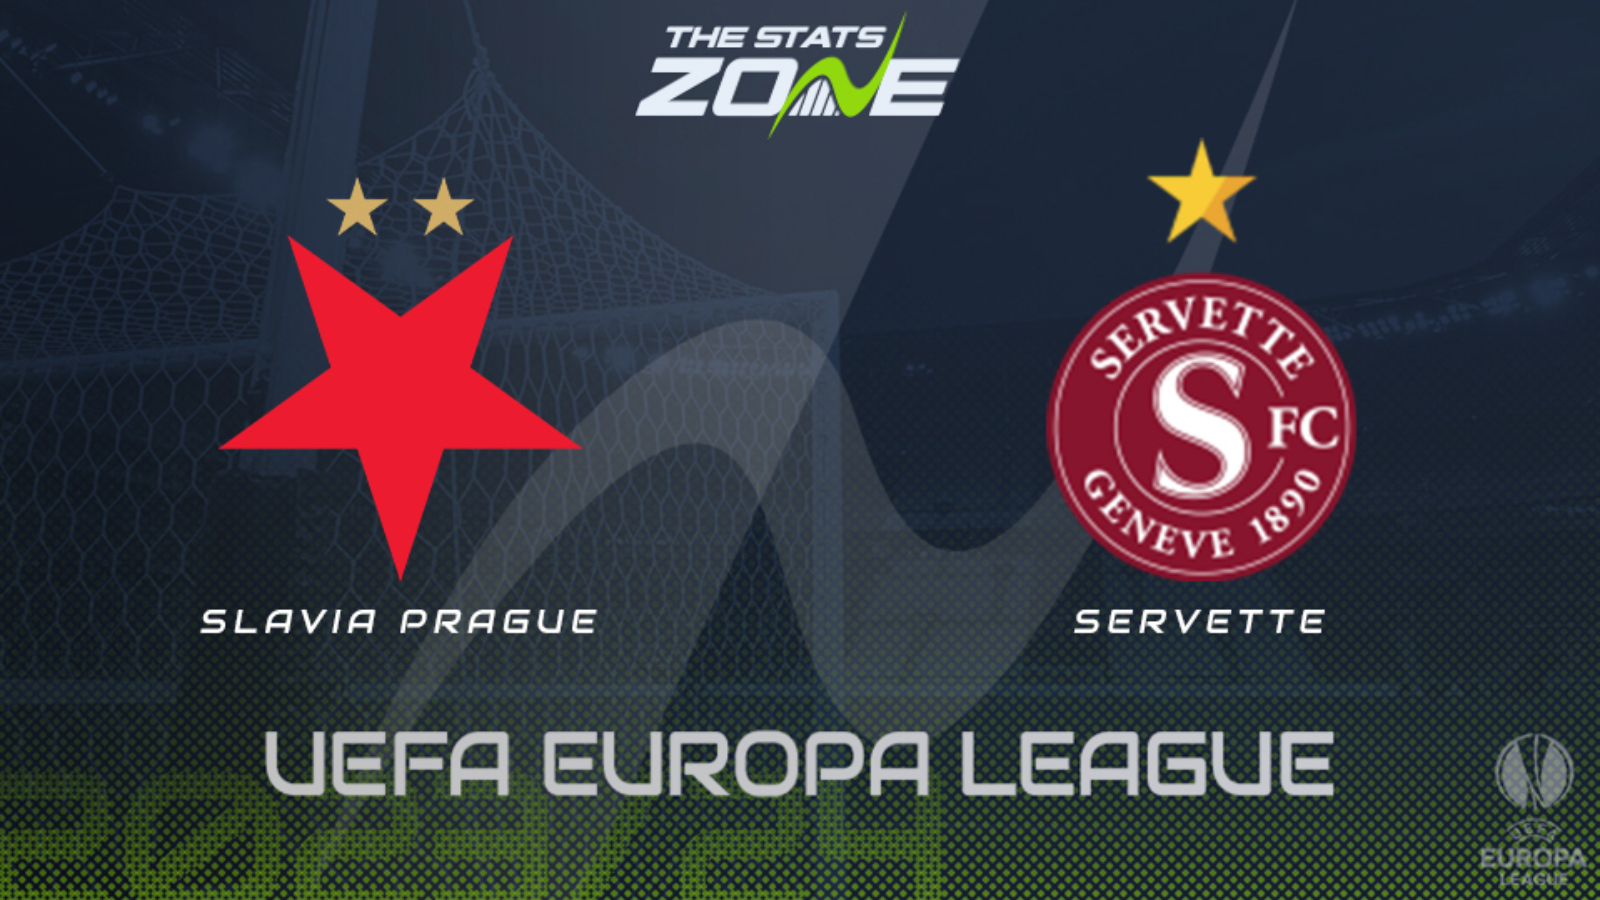 UEFA Conference League: Fantastic Olayinka inspires Slavia Prague